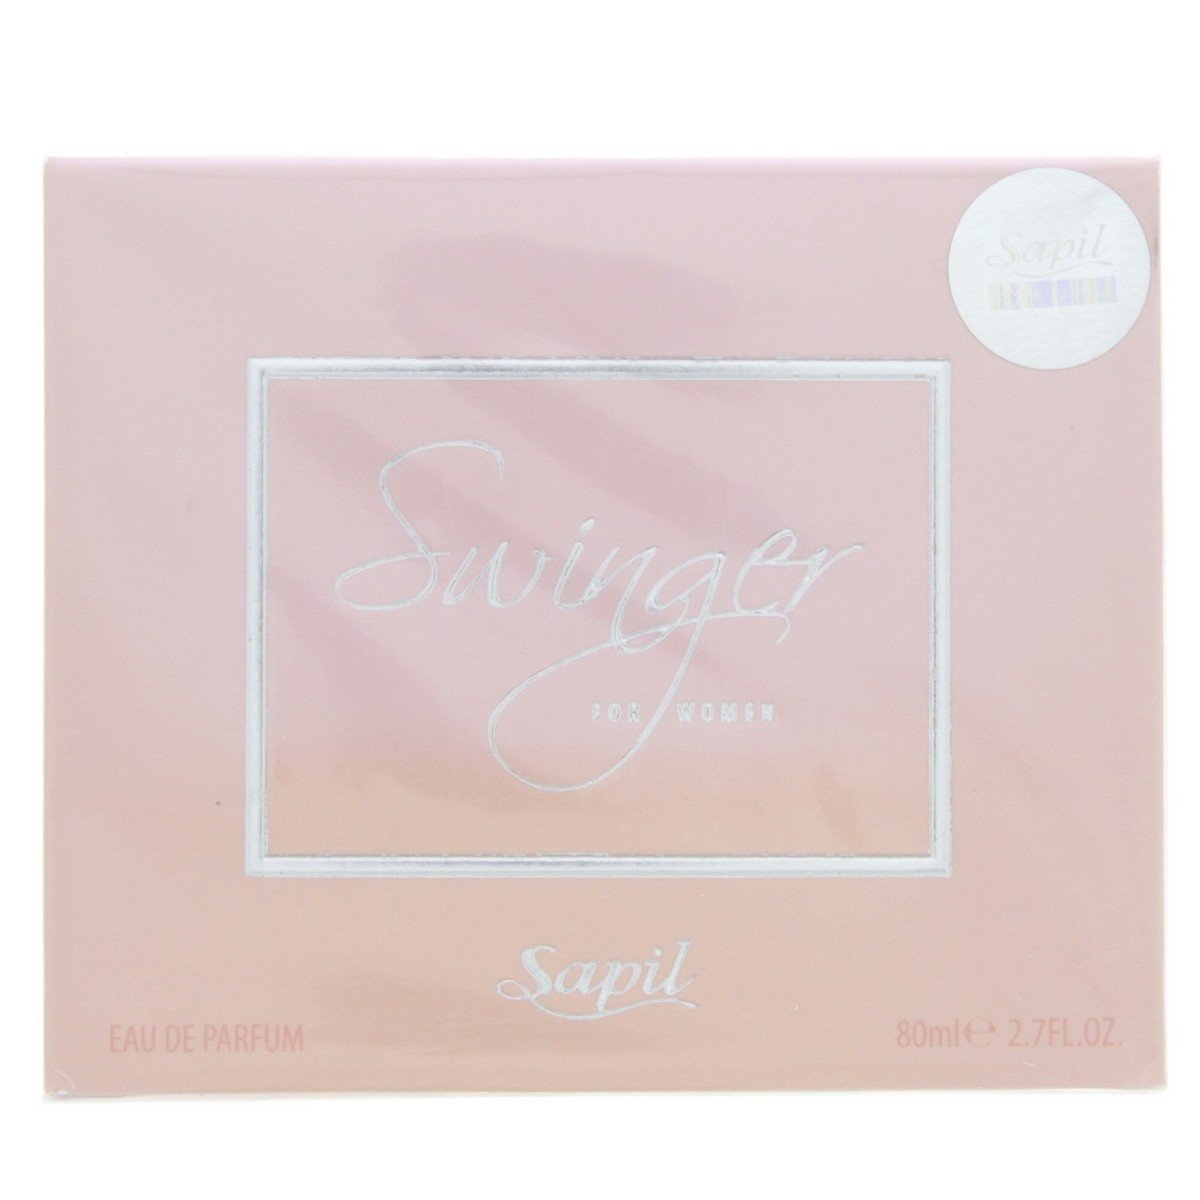 Sapil Swinger Eau De Parfum For Women 80 ml